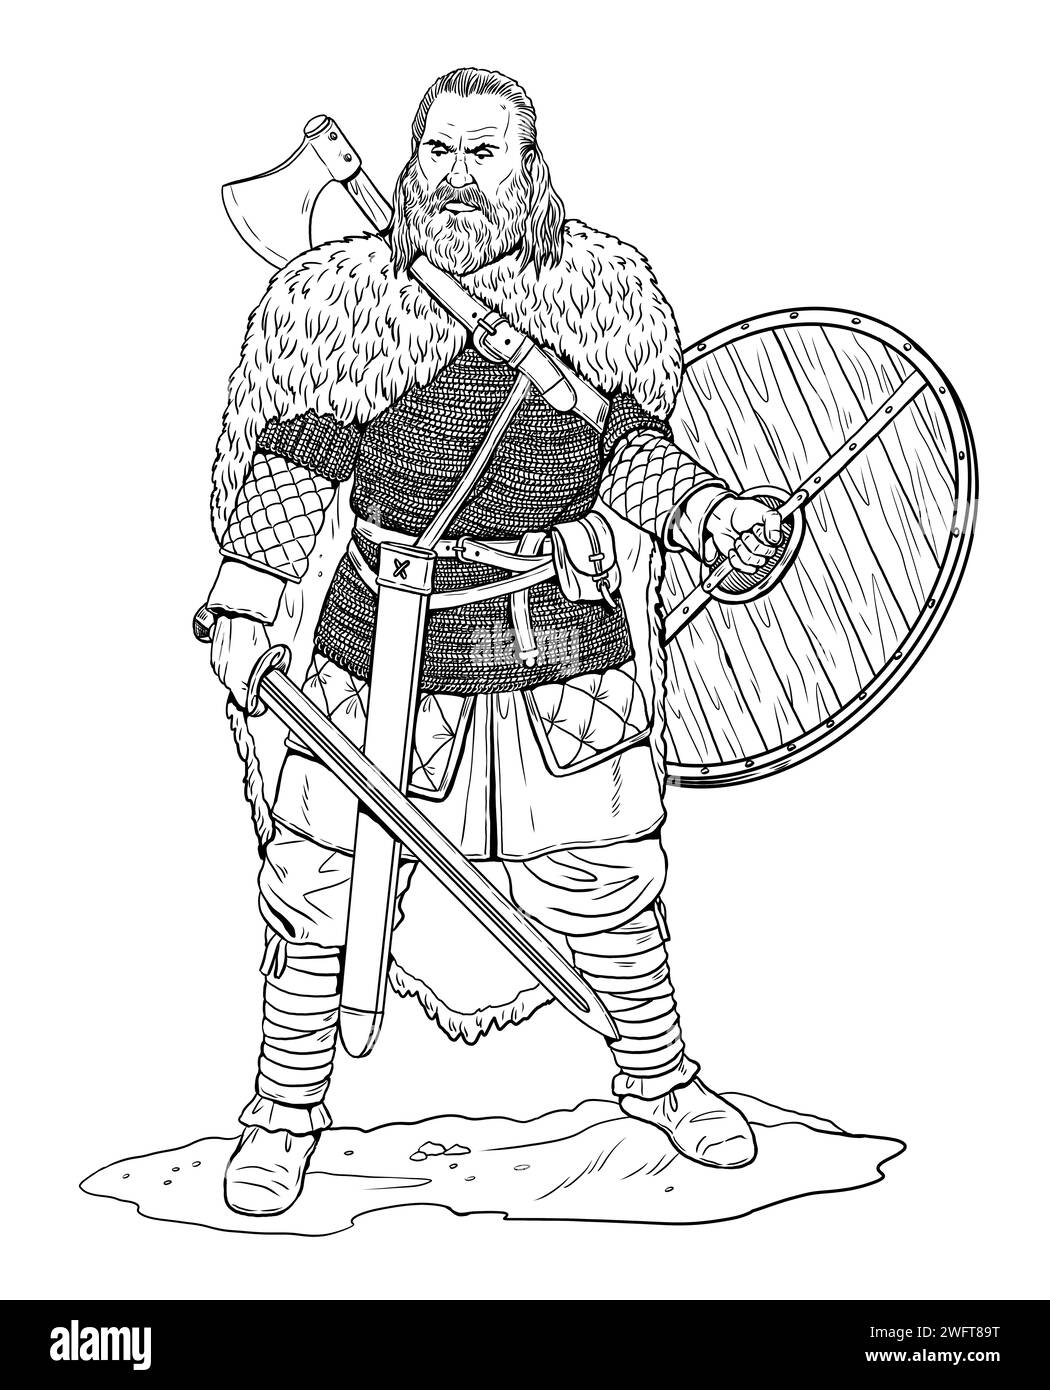 Dessin guerrier germanique. Illustration avec des ennemis romains. Banque D'Images